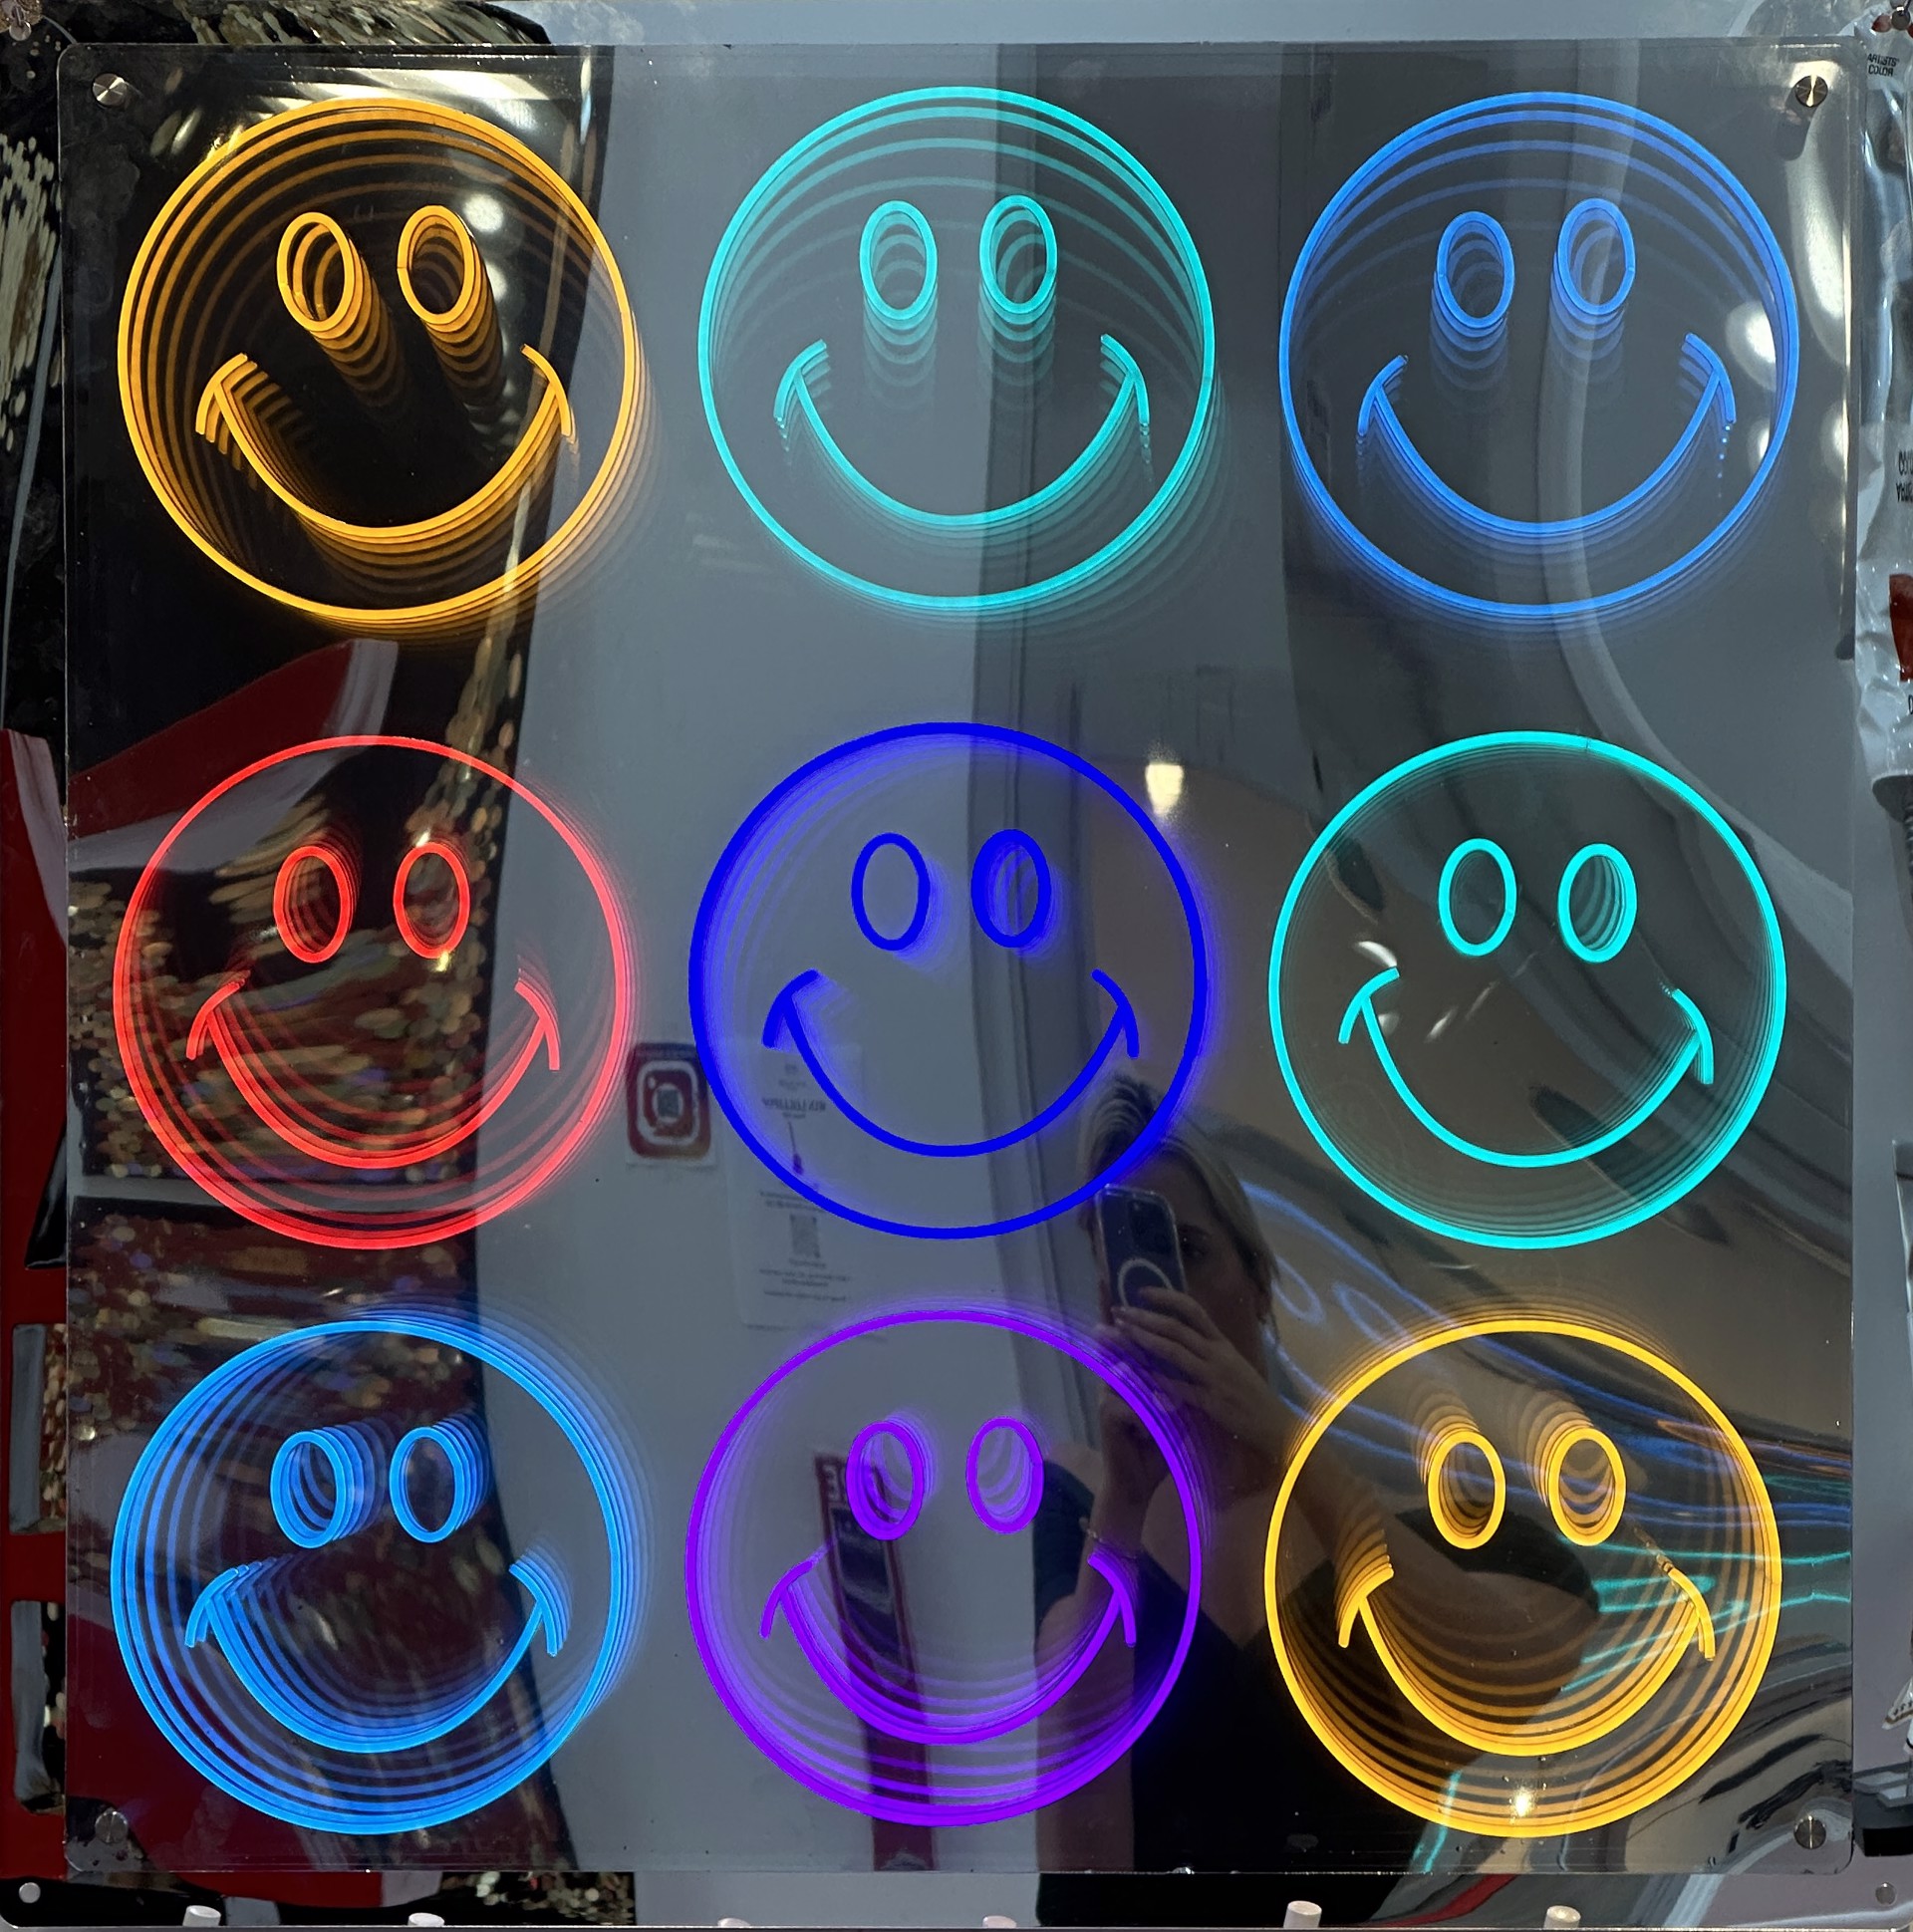 Neon  "Smile Smile Smile" by EBFA Studio